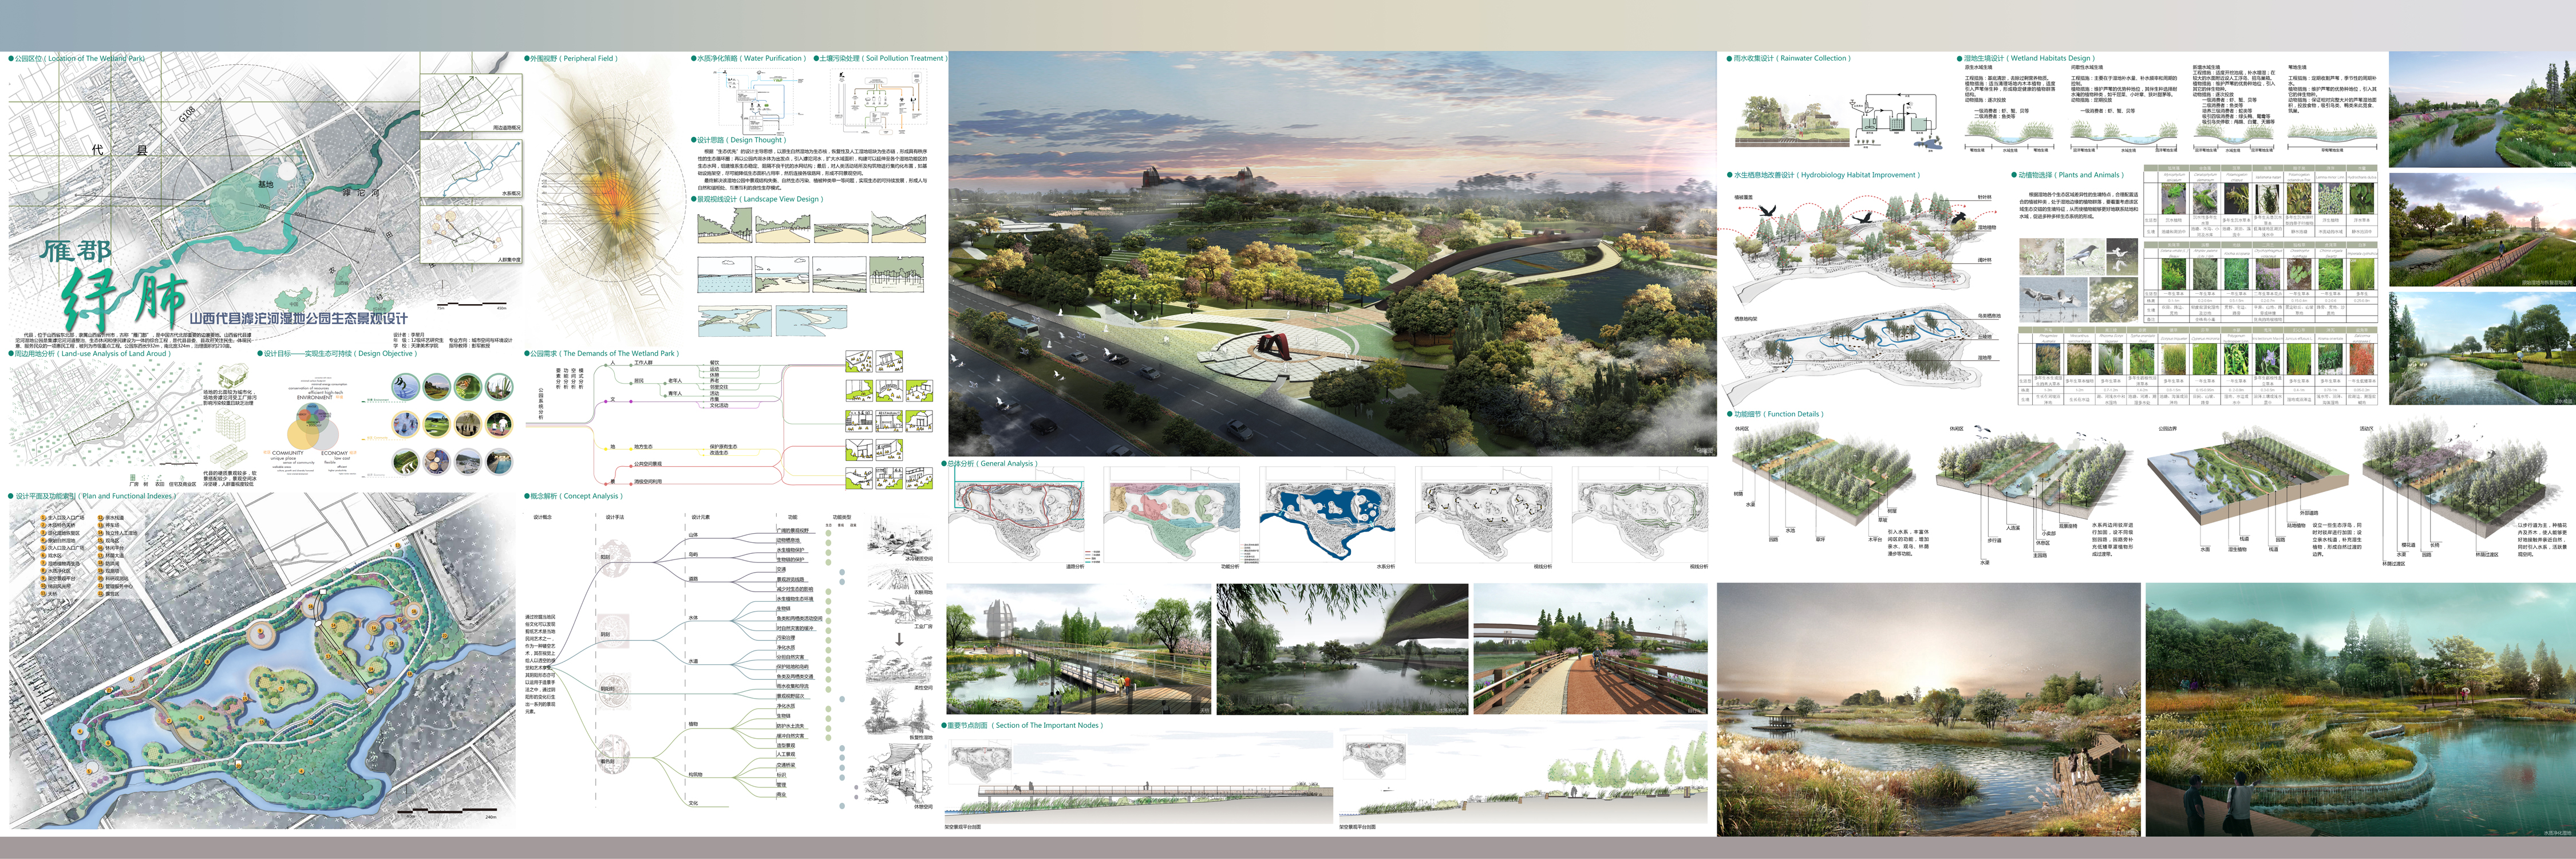 雁郡绿肺——山西代县滹沱河湿地公园生态景观设计1